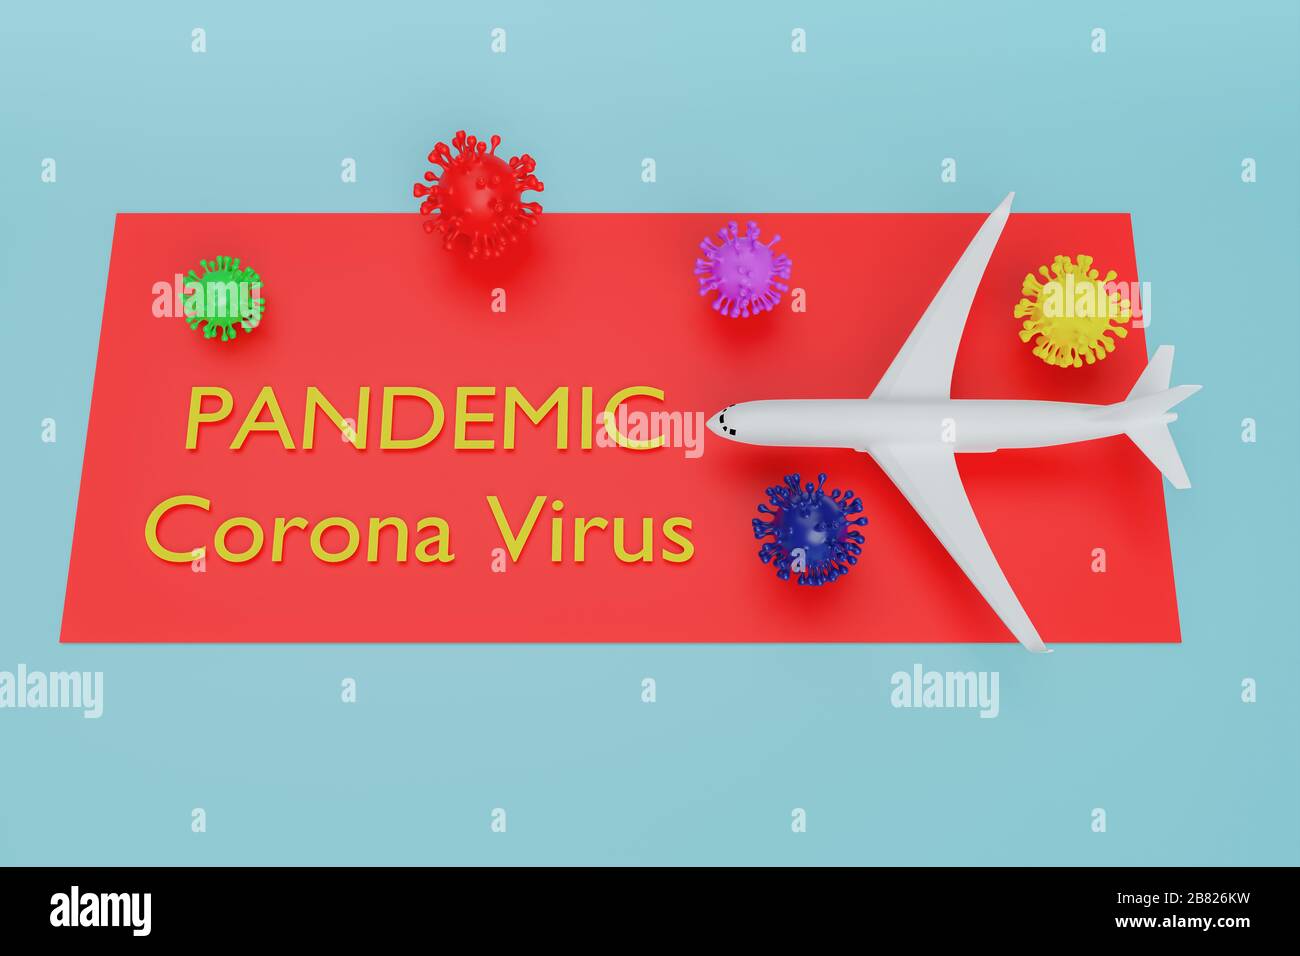 Globale Pandemie mit Coronavirus COVID-19 mit Flugzeug, Stopp Pandemie Reise stoppen Stopp Reise stoppen DIE Ausbreitung der Keime COVID-19,3D Abbildung Stockfoto